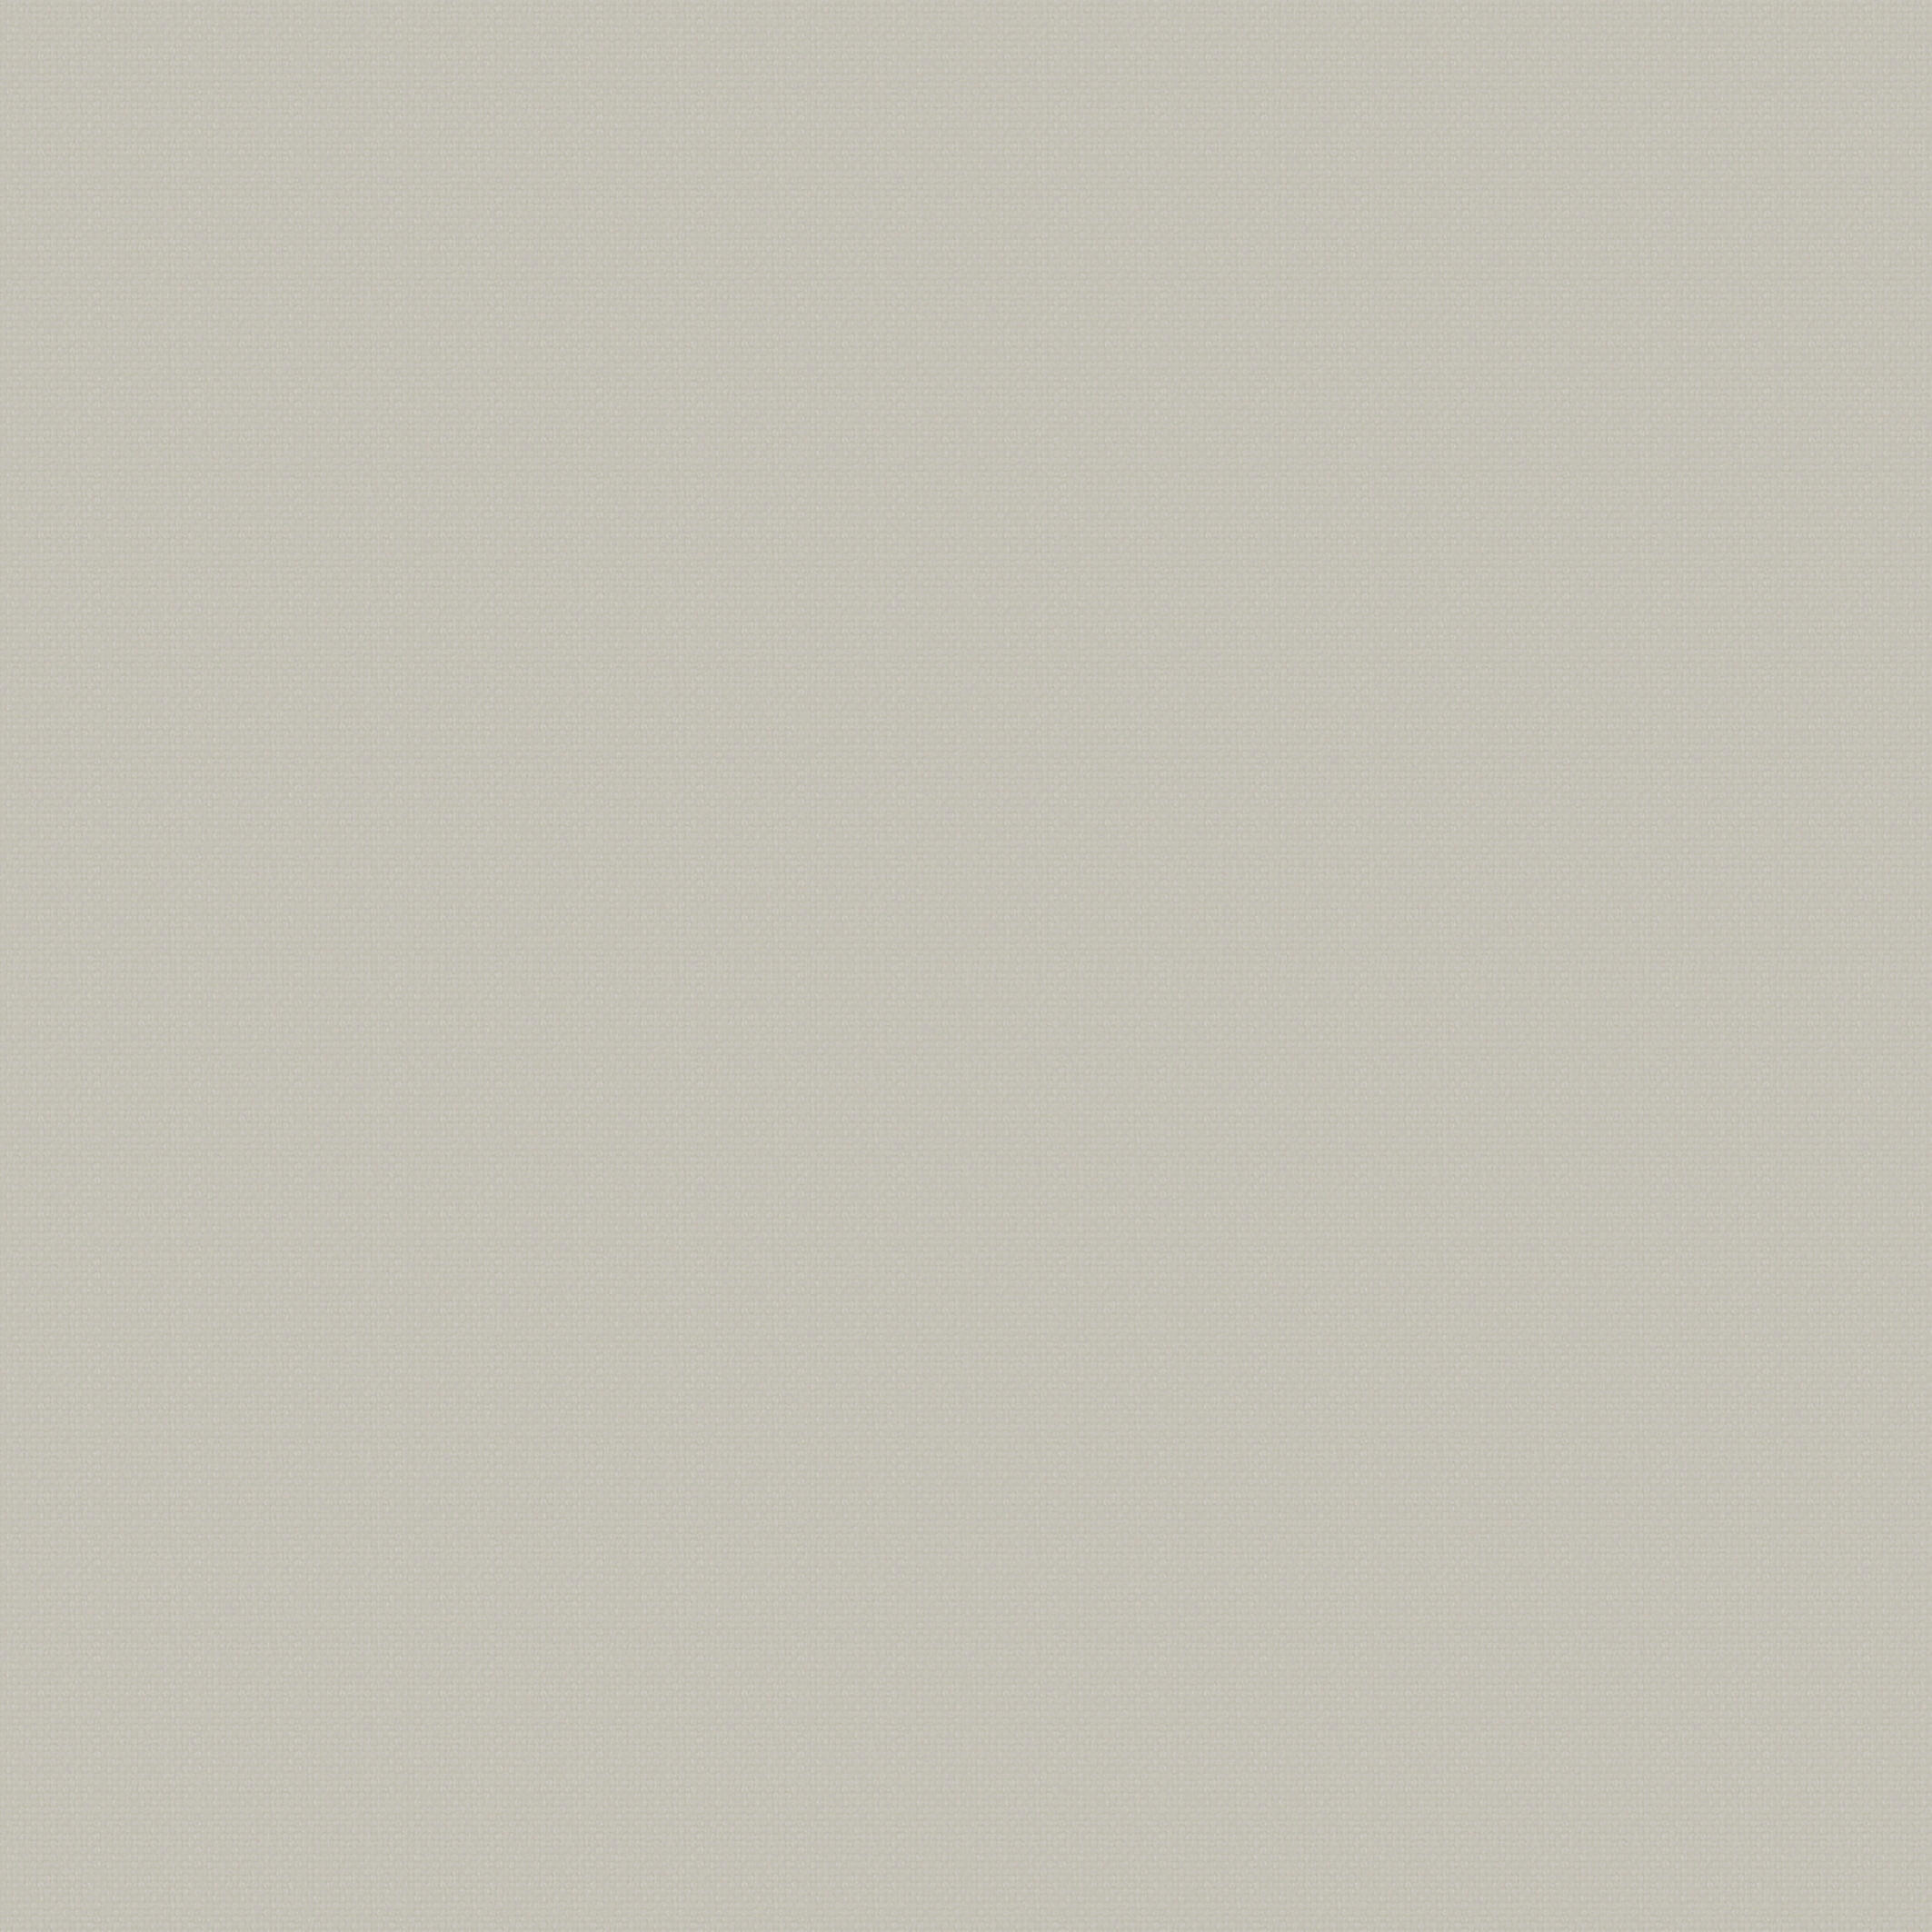 Tela al corte loneta mimos beig ancho 280 cm